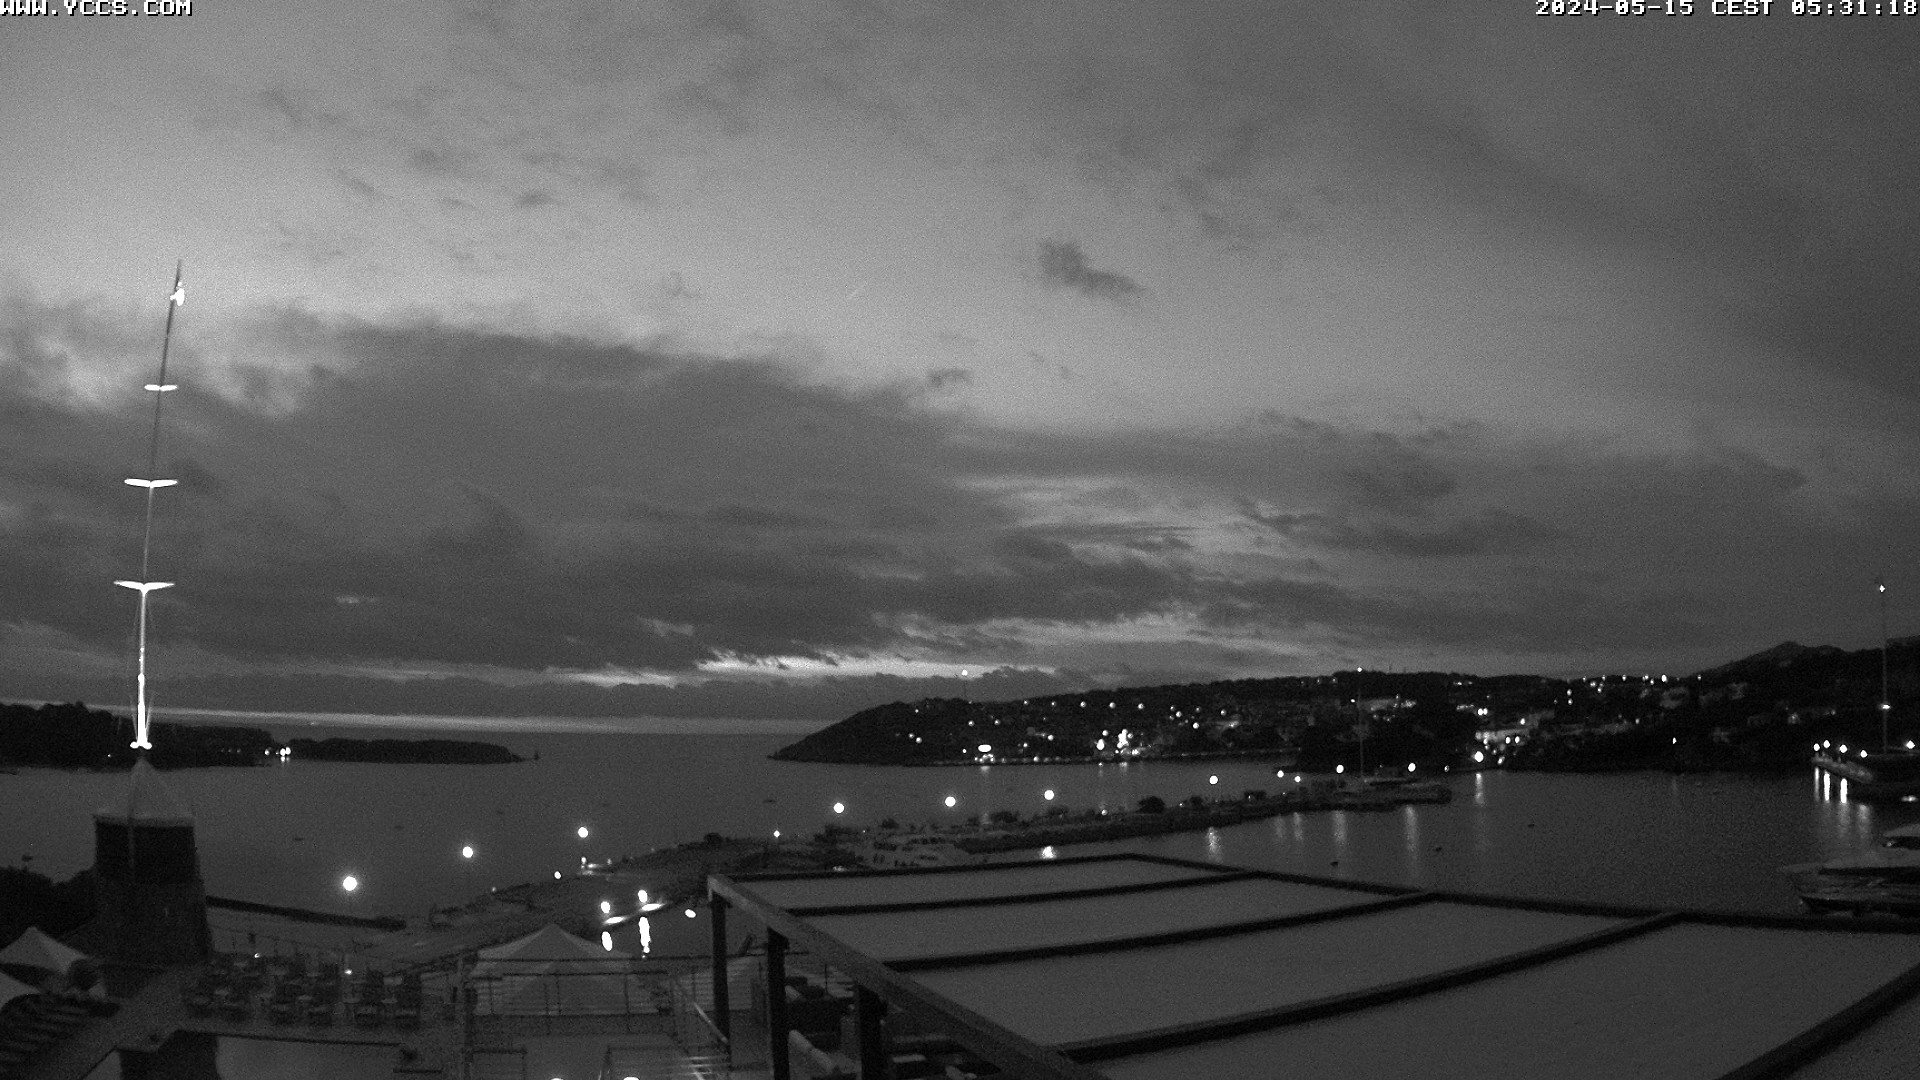 Porto Cervo Mi. 05:31